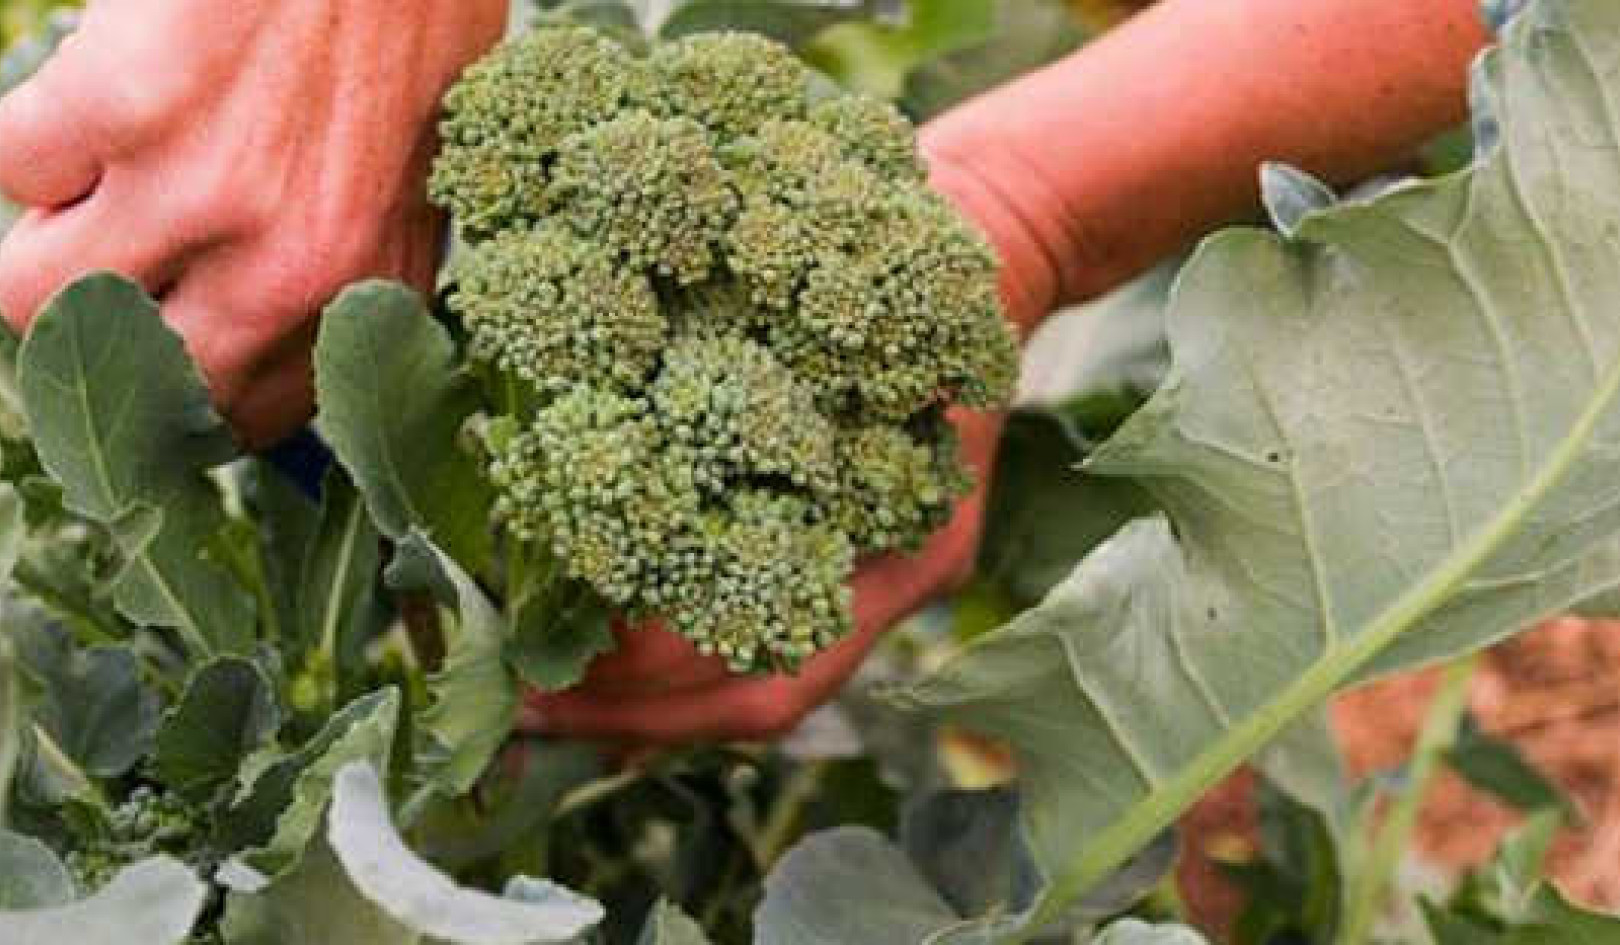 Brokkoli kann helfen, Erkältungen und Virusinfektionen vorzubeugen